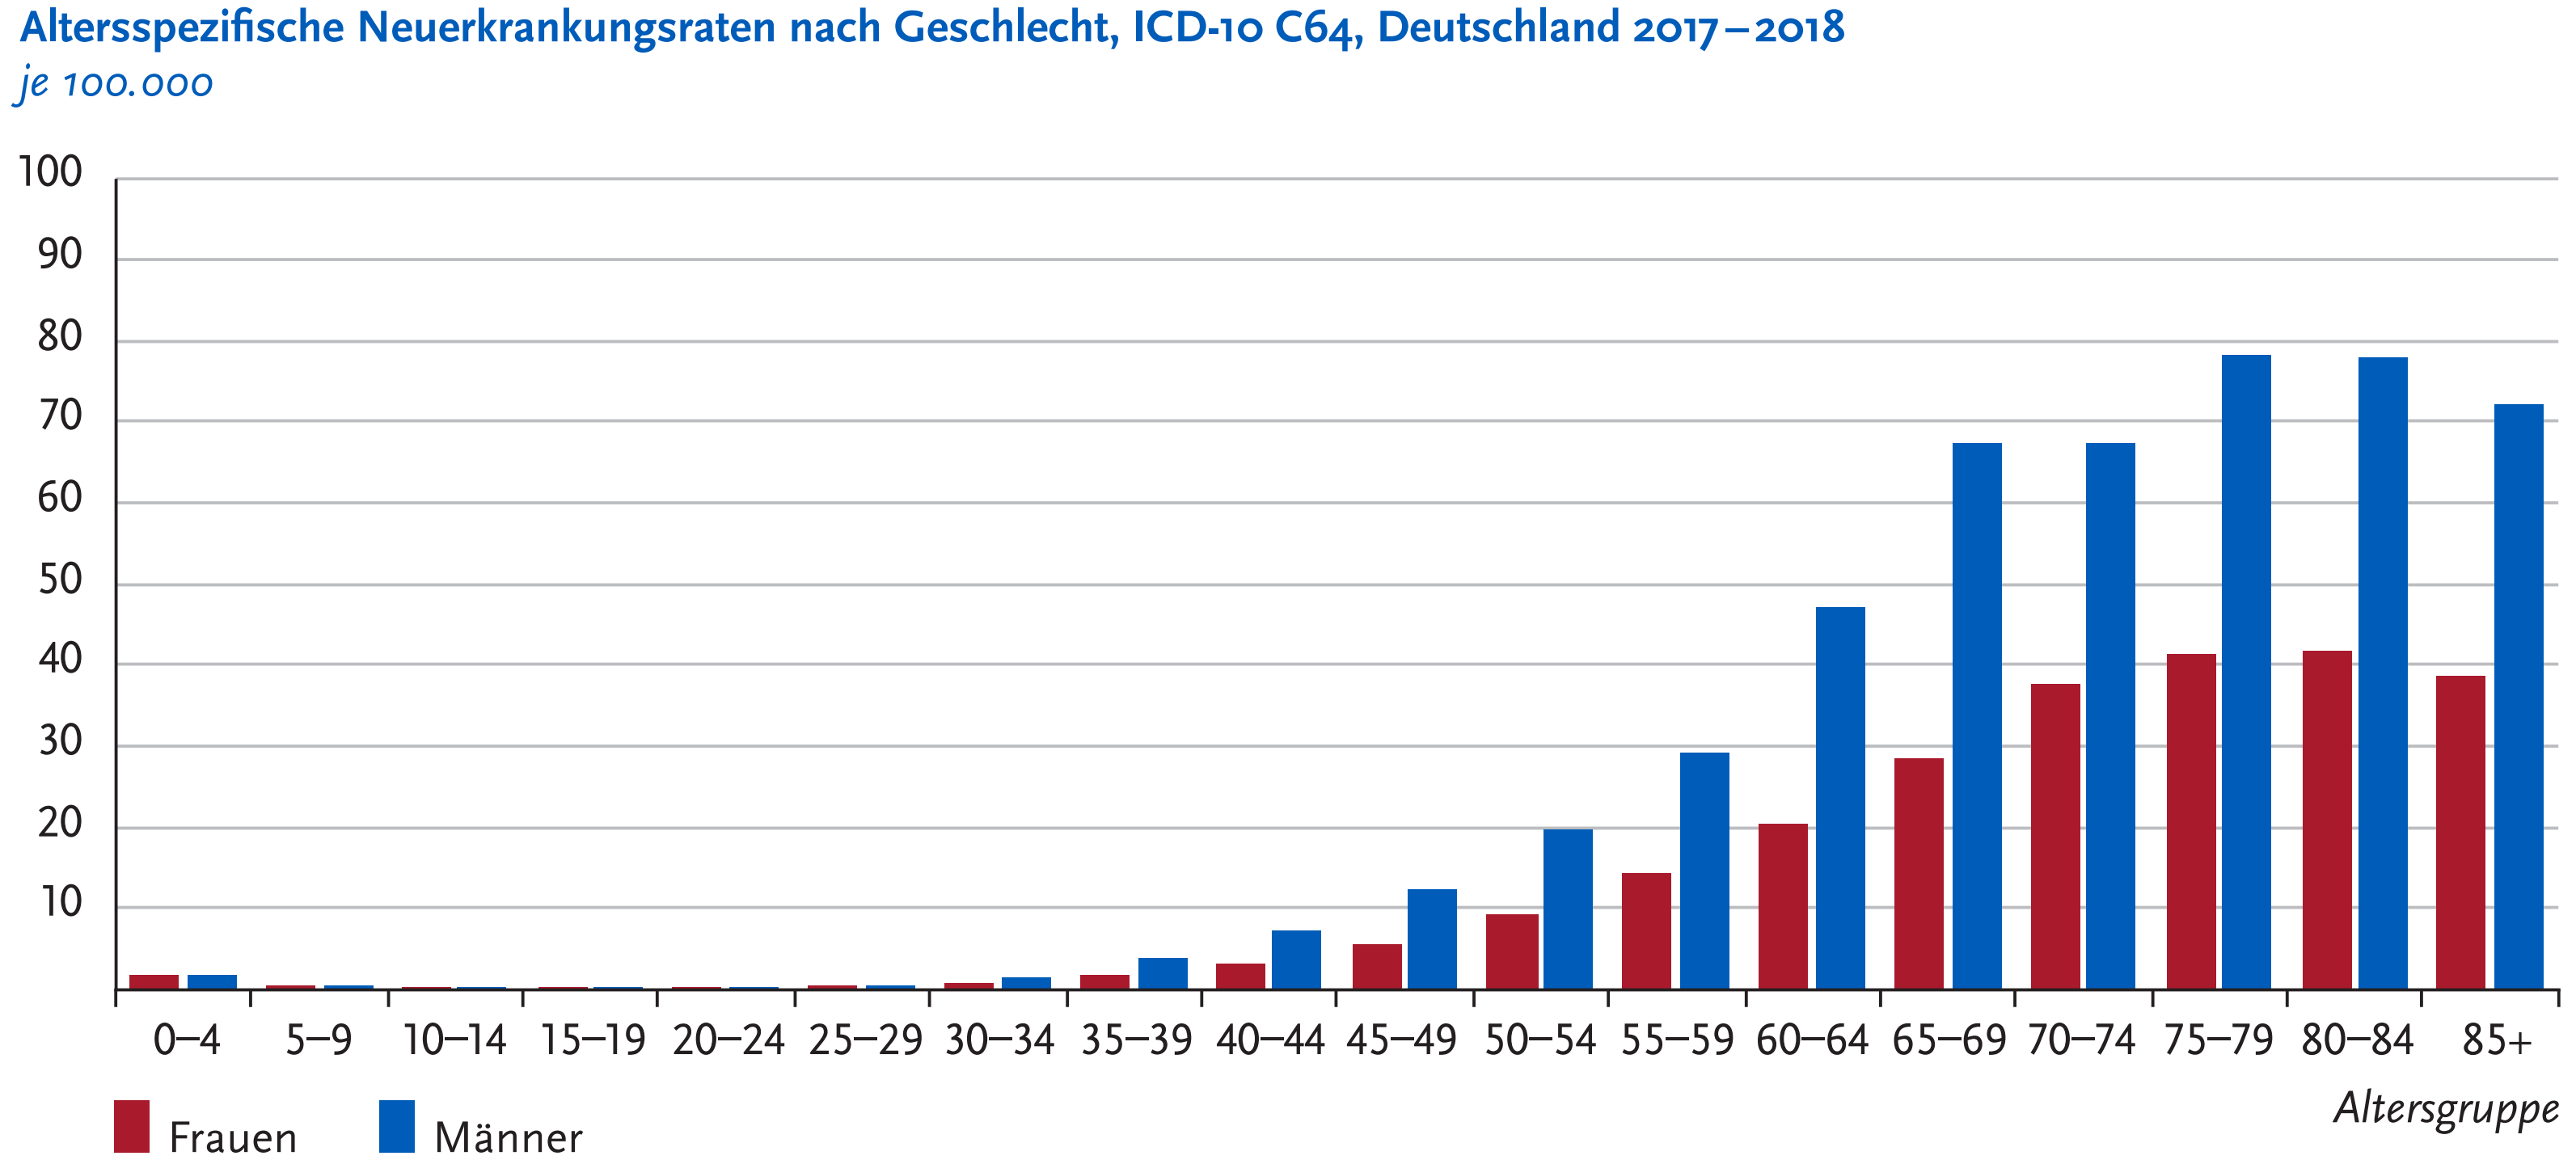 Geschätzte Inzidenz des Nierenkrebses in Deutschland – Neuerkrankungen/Todesfälle Altersbezogene Neuerkrankungsraten je 100.000 nach Geschlecht 1